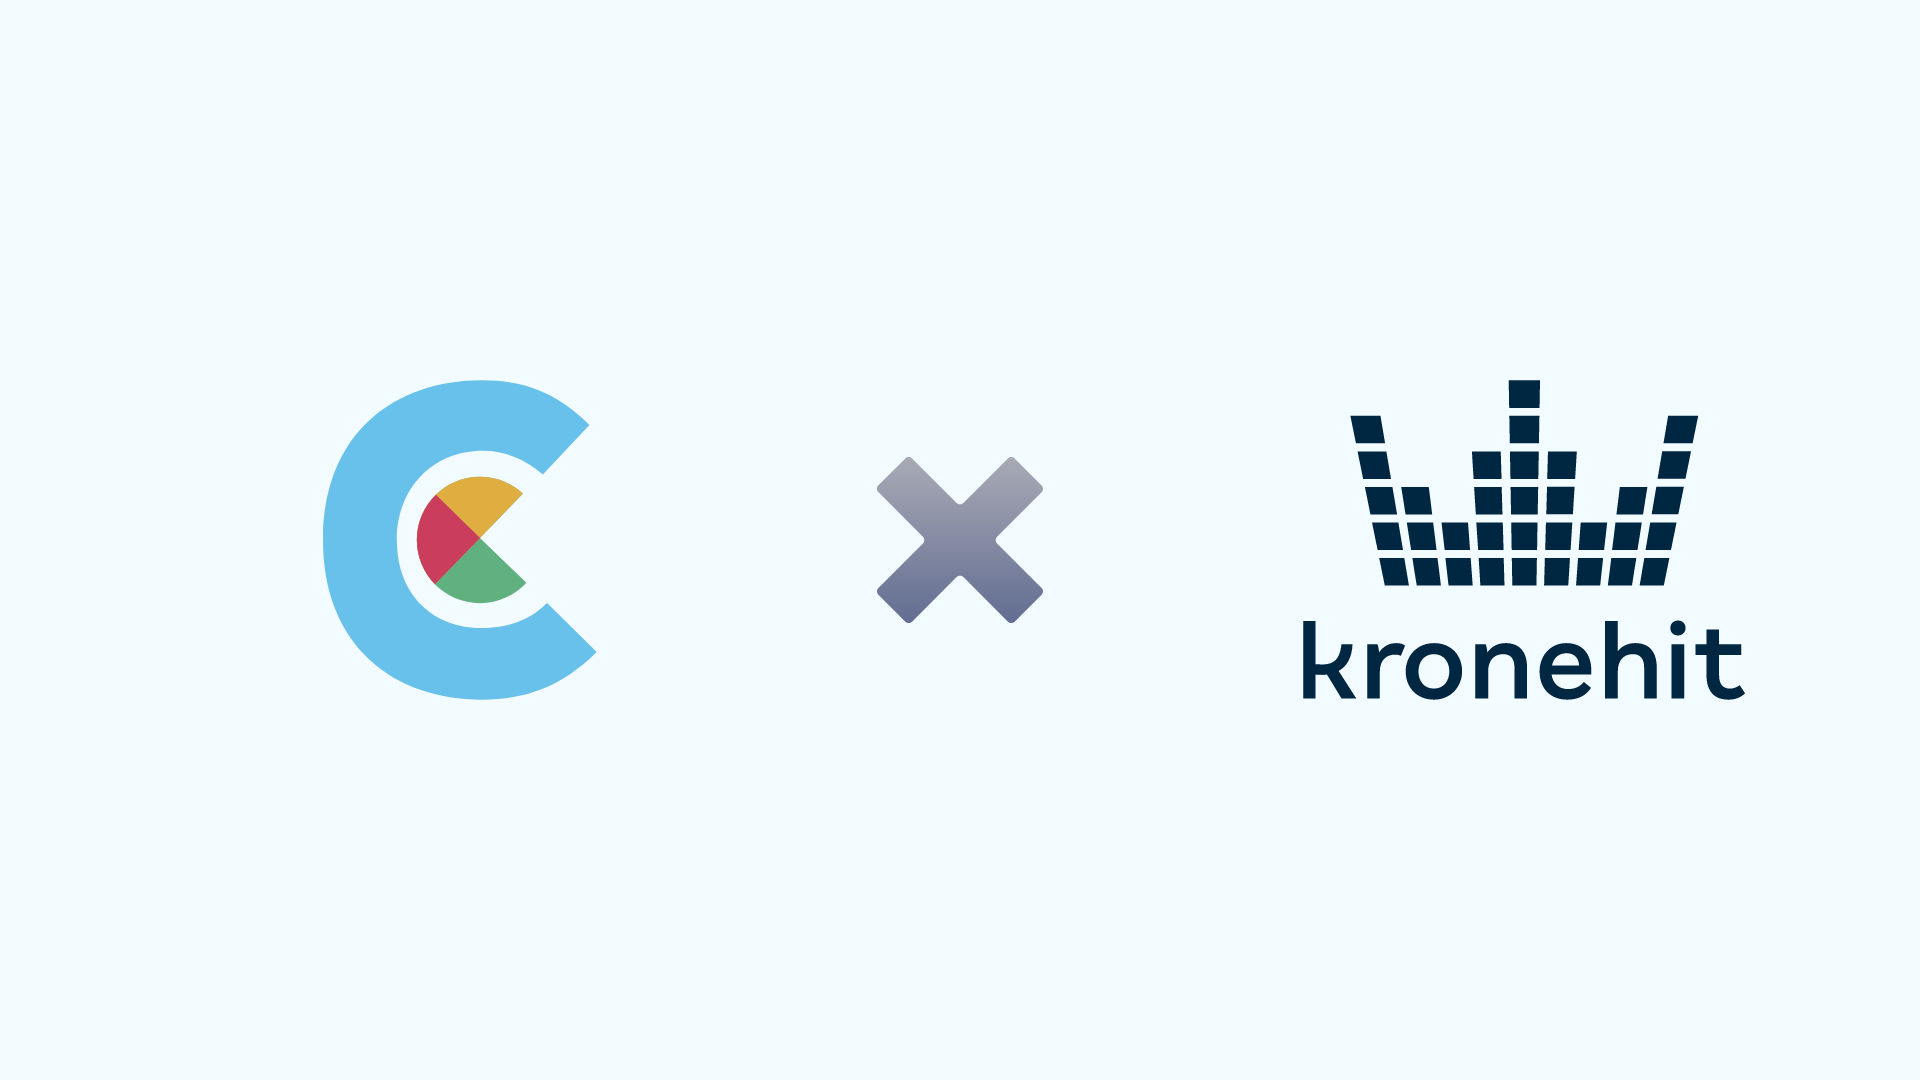 Captcha.eu pozyskuje Kronehit jako głównego klienta dla swoich rozwiązań captcha